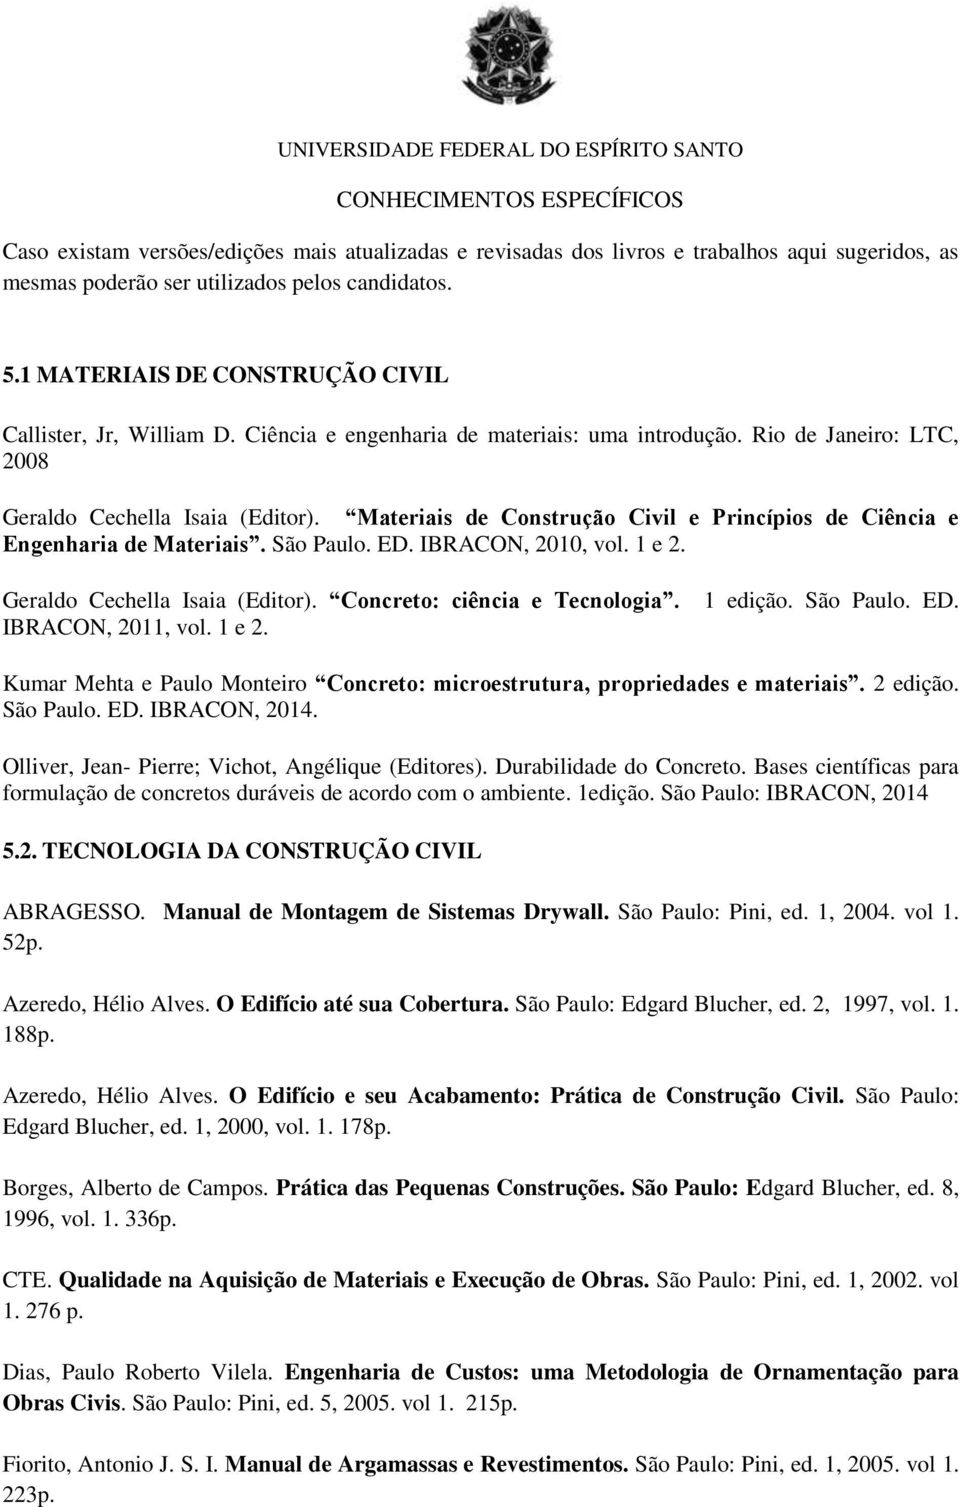 Materiais de Construção Civil e Princípios de Ciência e Engenharia de Materiais. São Paulo. ED. IBRACON, 2010, vol. 1 e 2. Geraldo Cechella Isaia (Editor). Concreto: ciência e Tecnologia.